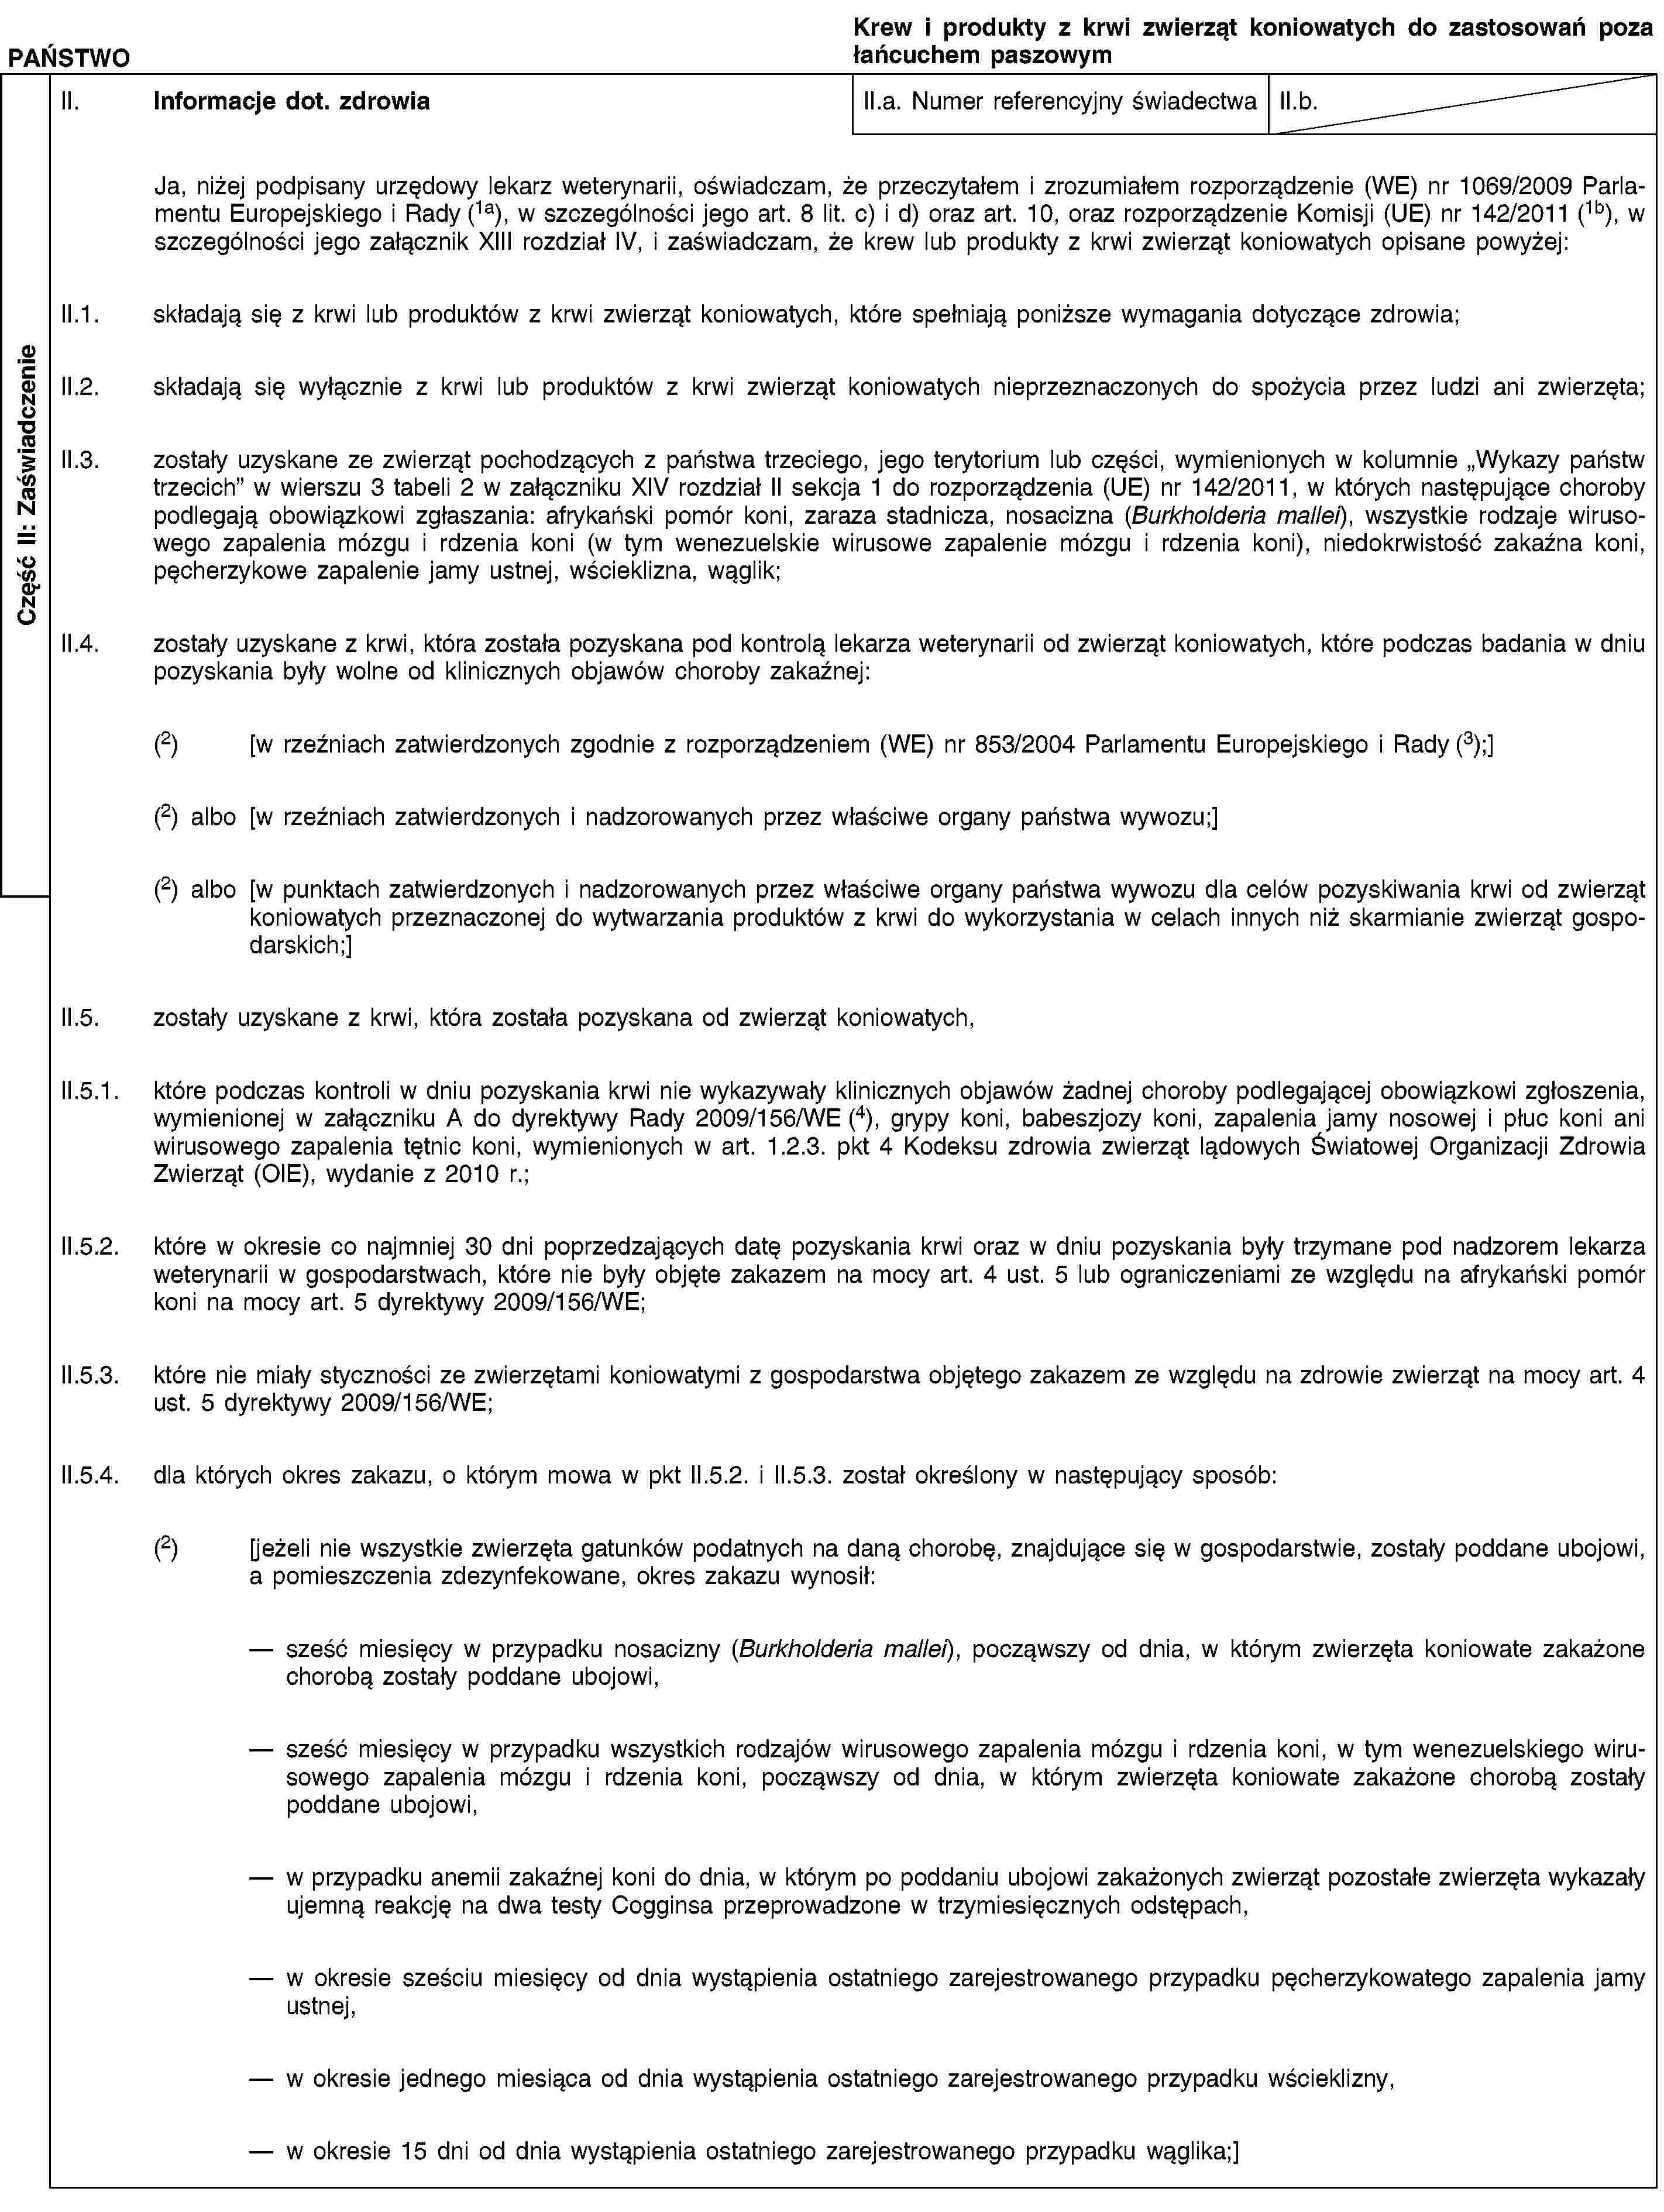 Część II: ZaświadczeniePAŃSTWOKrew i produkty z krwi zwierząt koniowatych do zastosowań poza łańcuchem paszowymII. Informacje dot. zdrowiaII.a. Numer referencyjny świadectwaII.b.Ja, niżej podpisany urzędowy lekarz weterynarii, oświadczam, że przeczytałem i zrozumiałem rozporządzenie (WE) nr 1069/2009 Parlamentu Europejskiego i Rady (1a), w szczególności jego art. 8 lit. c) i d) oraz art. 10, oraz rozporządzenie Komisji (UE) nr 142/2011 (1b), w szczególności jego załącznik XIII rozdział IV, i zaświadczam, że krew lub produkty z krwi zwierząt koniowatych opisane powyżej:II.1. składają się z krwi lub produktów z krwi zwierząt koniowatych, które spełniają poniższe wymagania dotyczące zdrowia;II.2. składają się wyłącznie z krwi lub produktów z krwi zwierząt koniowatych nieprzeznaczonych do spożycia przez ludzi ani zwierzęta;II.3. zostały uzyskane ze zwierząt pochodzących z państwa trzeciego, jego terytorium lub części, wymienionych w kolumnie „Wykazy państw trzecich” w wierszu 3 tabeli 2 w załączniku XIV rozdział II sekcja 1 do rozporządzenia (UE) nr 142/2011, w których następujące choroby podlegają obowiązkowi zgłaszania: afrykański pomór koni, zaraza stadnicza, nosacizna (Burkholderia mallei), wszystkie rodzaje wirusowego zapalenia mózgu i rdzenia koni (w tym wenezuelskie wirusowe zapalenie mózgu i rdzenia koni), niedokrwistość zakaźna koni, pęcherzykowe zapalenie jamy ustnej, wścieklizna, wąglik;II.4. zostały uzyskane z krwi, która została pozyskana pod kontrolą lekarza weterynarii od zwierząt koniowatych, które podczas badania w dniu pozyskania były wolne od klinicznych objawów choroby zakaźnej:(2) [w rzeźniach zatwierdzonych zgodnie z rozporządzeniem (WE) nr 853/2004 Parlamentu Europejskiego i Rady (3);](2) albo [w rzeźniach zatwierdzonych i nadzorowanych przez właściwe organy państwa wywozu;](2) albo [w punktach zatwierdzonych i nadzorowanych przez właściwe organy państwa wywozu dla celów pozyskiwania krwi od zwierząt koniowatych przeznaczonej do wytwarzania produktów z krwi do wykorzystania w celach innych niż skarmianie zwierząt gospodarskich;]II.5. zostały uzyskane z krwi, która została pozyskana od zwierząt koniowatych,II.5.1. które podczas kontroli w dniu pozyskania krwi nie wykazywały klinicznych objawów żadnej choroby podlegającej obowiązkowi zgłoszenia, wymienionej w załączniku A do dyrektywy Rady 2009/156/WE (4), grypy koni, babeszjozy koni, zapalenia jamy nosowej i płuc koni ani wirusowego zapalenia tętnic koni, wymienionych w art. 1.2.3. pkt 4 Kodeksu zdrowia zwierząt lądowych Światowej Organizacji Zdrowia Zwierząt (OIE), wydanie z 2010 r.;II.5.2. które w okresie co najmniej 30 dni poprzedzających datę pozyskania krwi oraz w dniu pozyskania były trzymane pod nadzorem lekarza weterynarii w gospodarstwach, które nie były objęte zakazem na mocy art. 4 ust. 5 lub ograniczeniami ze względu na afrykański pomór koni na mocy art. 5 dyrektywy 2009/156/WE;II.5.3. które nie miały styczności ze zwierzętami koniowatymi z gospodarstwa objętego zakazem ze względu na zdrowie zwierząt na mocy art. 4 ust. 5 dyrektywy 2009/156/WE;II.5.4. dla których okres zakazu, o którym mowa w pkt II.5.2. i II.5.3. został określony w następujący sposób:(2) [jeżeli nie wszystkie zwierzęta gatunków podatnych na daną chorobę, znajdujące się w gospodarstwie, zostały poddane ubojowi, a pomieszczenia zdezynfekowane, okres zakazu wynosił:sześć miesięcy w przypadku nosacizny (Burkholderia mallei), począwszy od dnia, w którym zwierzęta koniowate zakażone chorobą zostały poddane ubojowi,sześć miesięcy w przypadku wszystkich rodzajów wirusowego zapalenia mózgu i rdzenia koni, w tym wenezuelskiego wirusowego zapalenia mózgu i rdzenia koni, począwszy od dnia, w którym zwierzęta koniowate zakażone chorobą zostały poddane ubojowi,w przypadku anemii zakaźnej koni do dnia, w którym po poddaniu ubojowi zakażonych zwierząt pozostałe zwierzęta wykazały ujemną reakcję na dwa testy Cogginsa przeprowadzone w trzymiesięcznych odstępach,w okresie sześciu miesięcy od dnia wystąpienia ostatniego zarejestrowanego przypadku pęcherzykowatego zapalenia jamy ustnej,w okresie jednego miesiąca od dnia wystąpienia ostatniego zarejestrowanego przypadku wścieklizny,w okresie 15 dni od dnia wystąpienia ostatniego zarejestrowanego przypadku wąglika;]